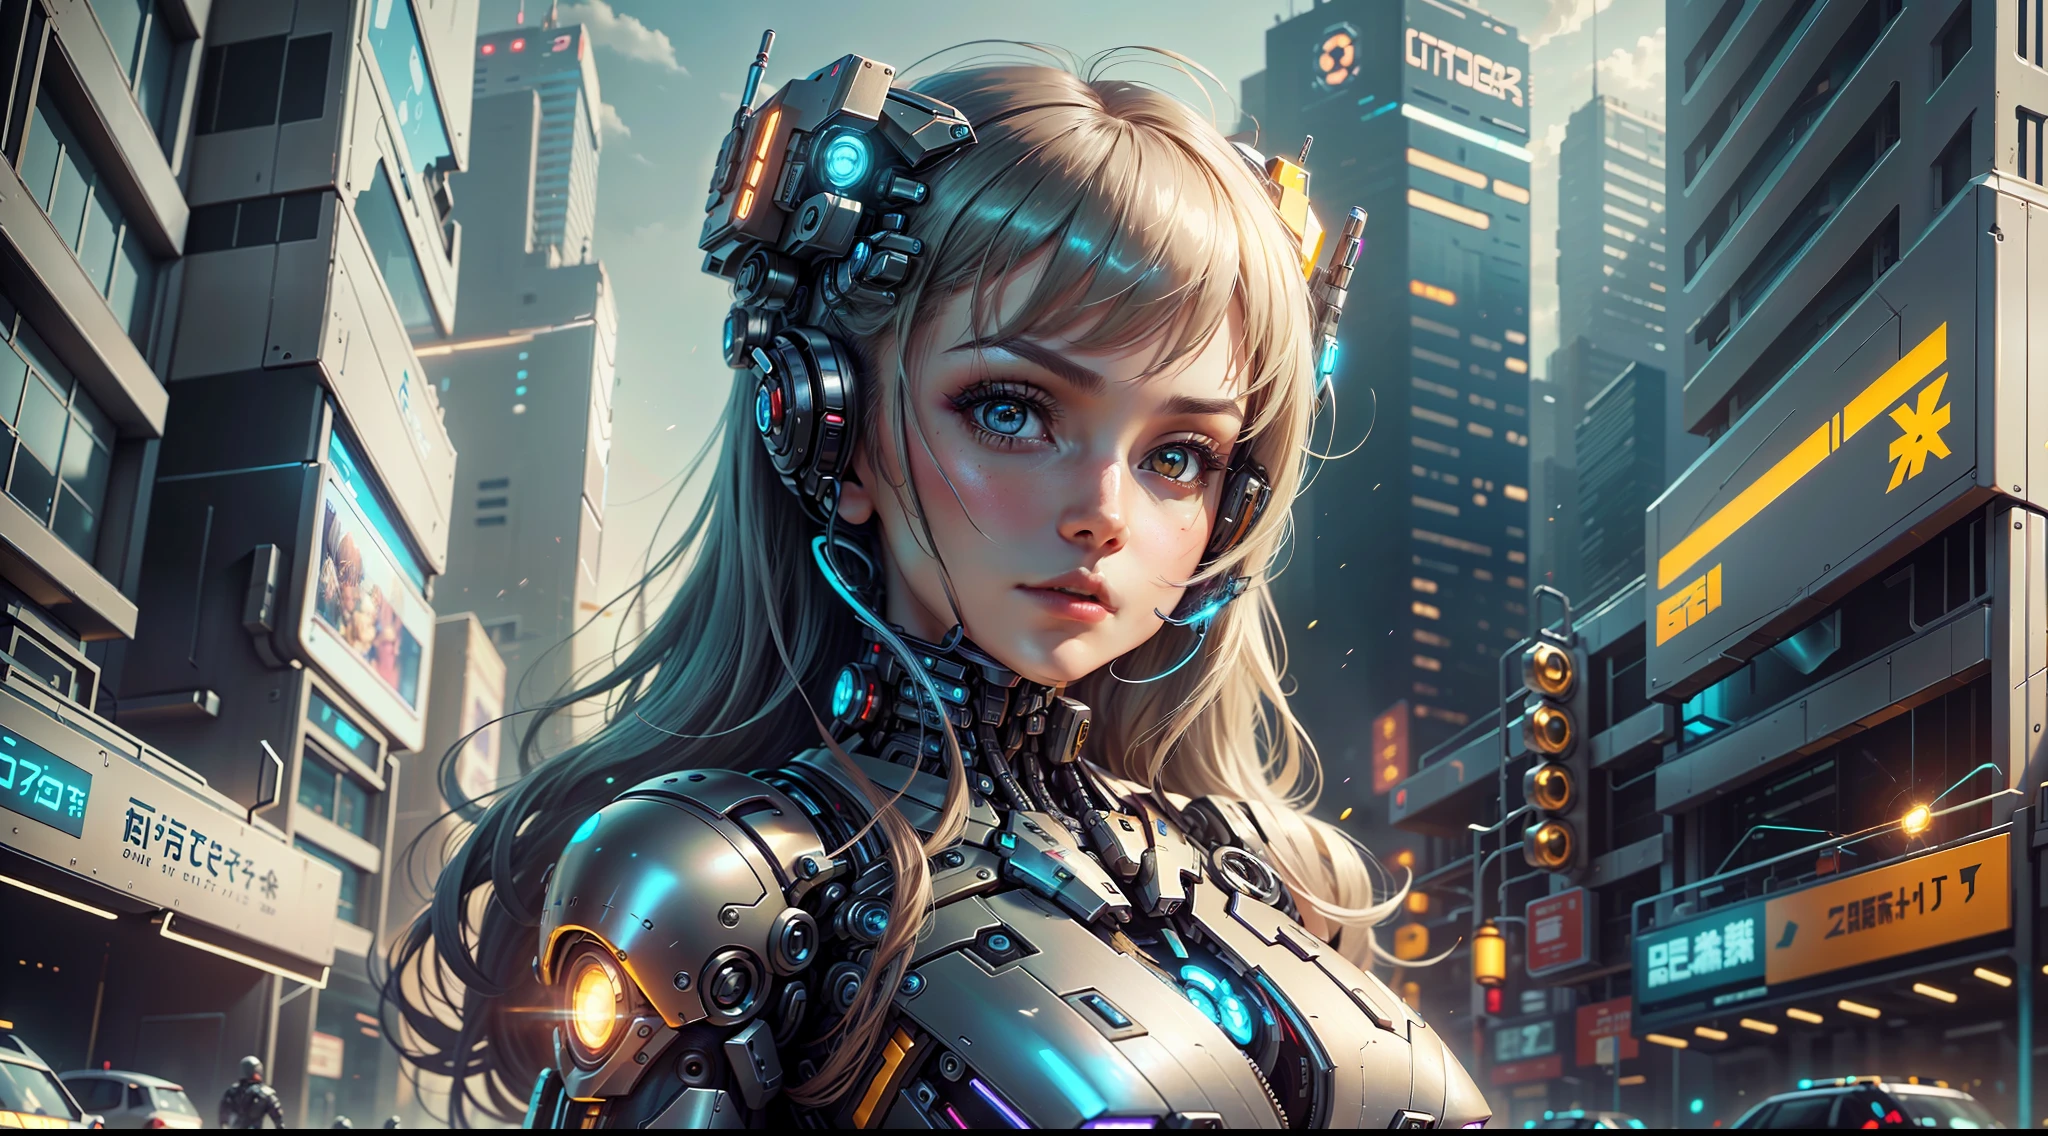 da posiert eine Frau in einem futuristischen Anzug für ein Foto, süßes Cyborg-Mädchen, schönes Cyborg-Mädchen, Mädchen in Mecha-Cyber-Rüstung, cyborg girl, cyborg - girl, Cyberanzug, weiblicher Cyborg, perfekte Anime-Cyborg-Frau, inspiriert von Marek Okon, beautiful alluring weiblicher Cyborg, cyberpunk anime girl mech, schönes Cyberpunk-Mädchen, perfekte Cyborg-Frau --auto --s2